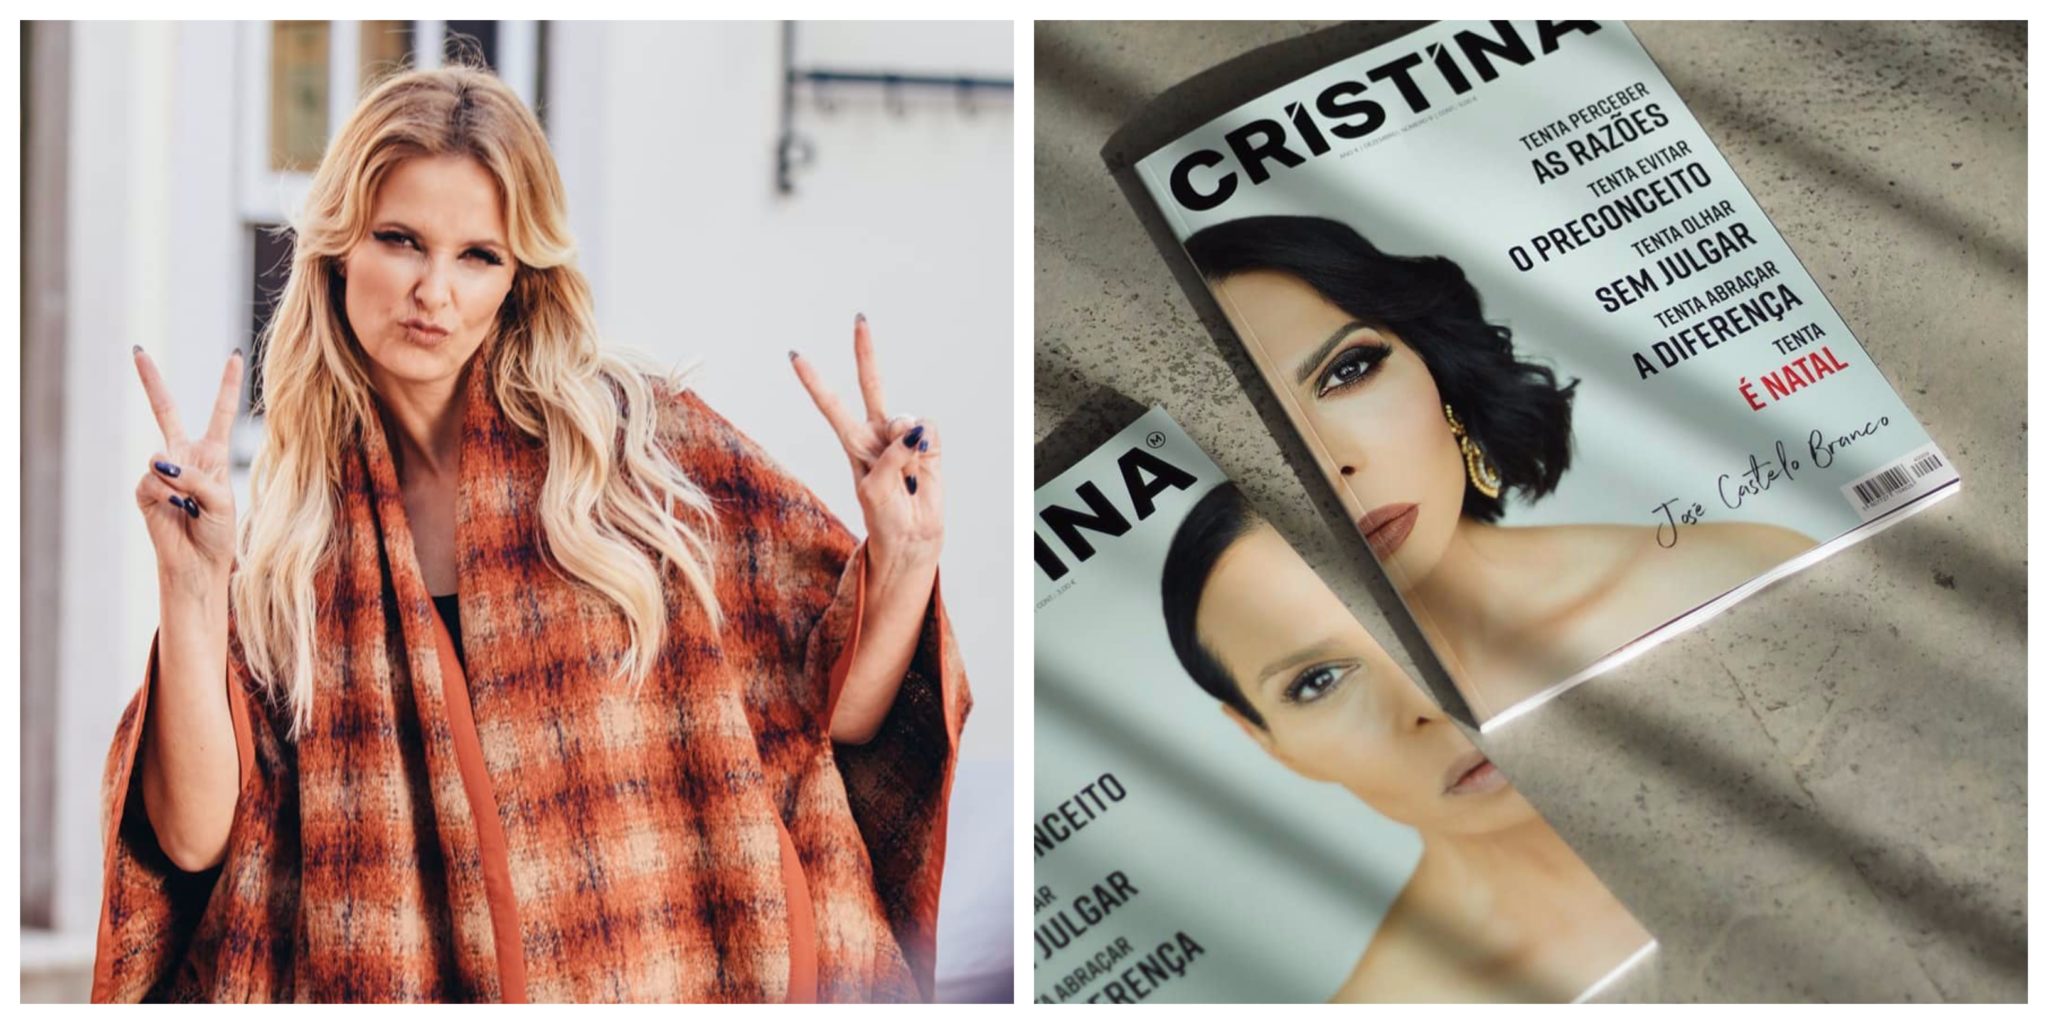 Cristina Ferreira Jose Castelo Branco Capa Da Revista 'Cristina' Revelada. O Protagonista É Inesperado